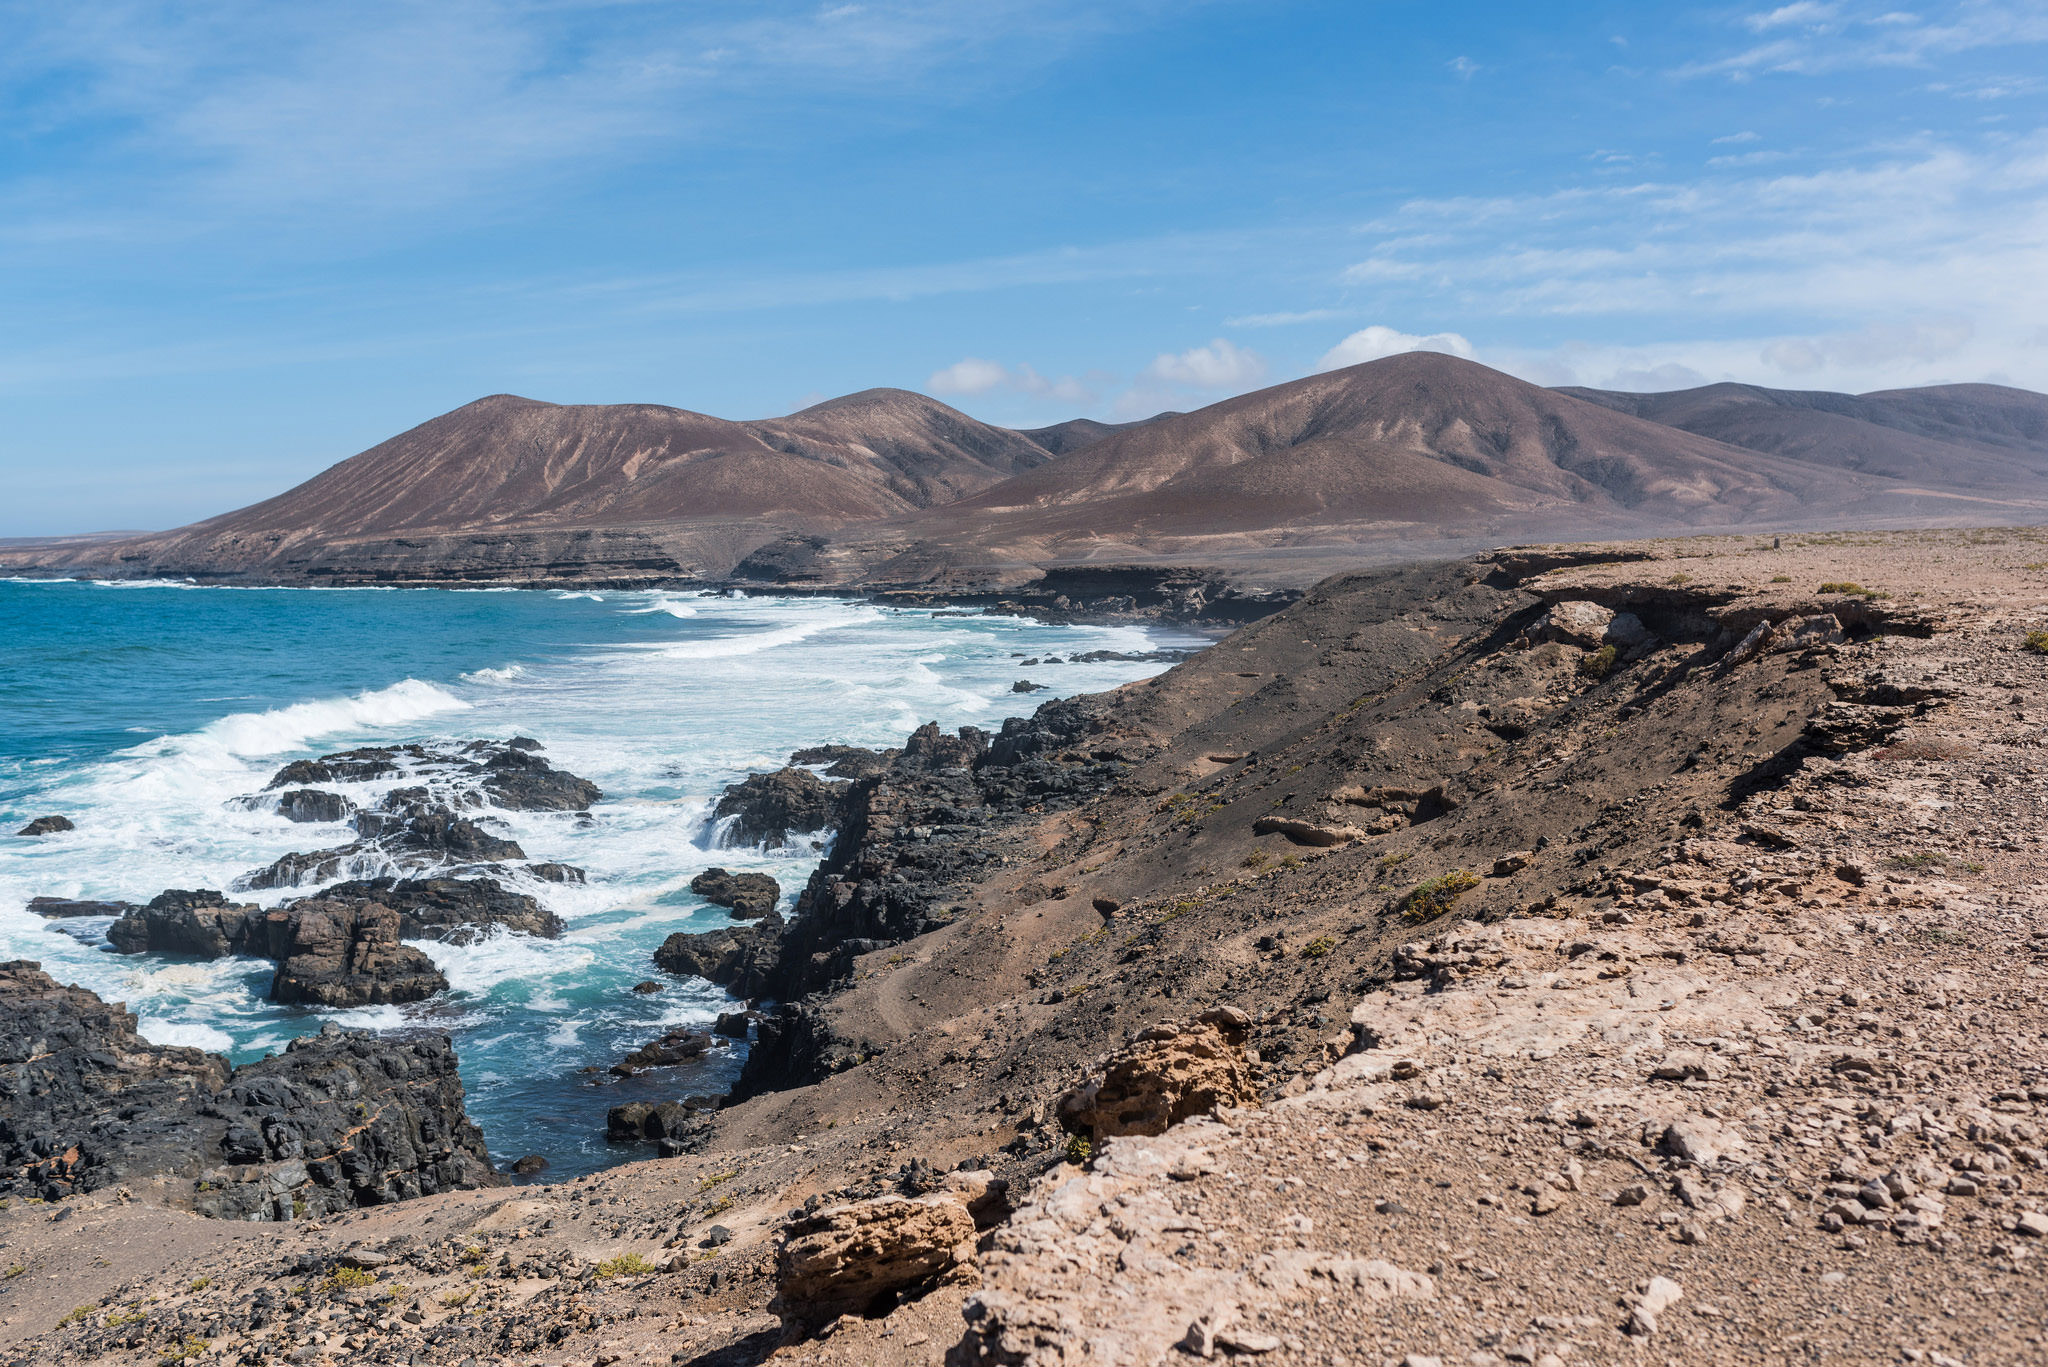 Vakanties naar Fuerteventura zoeken